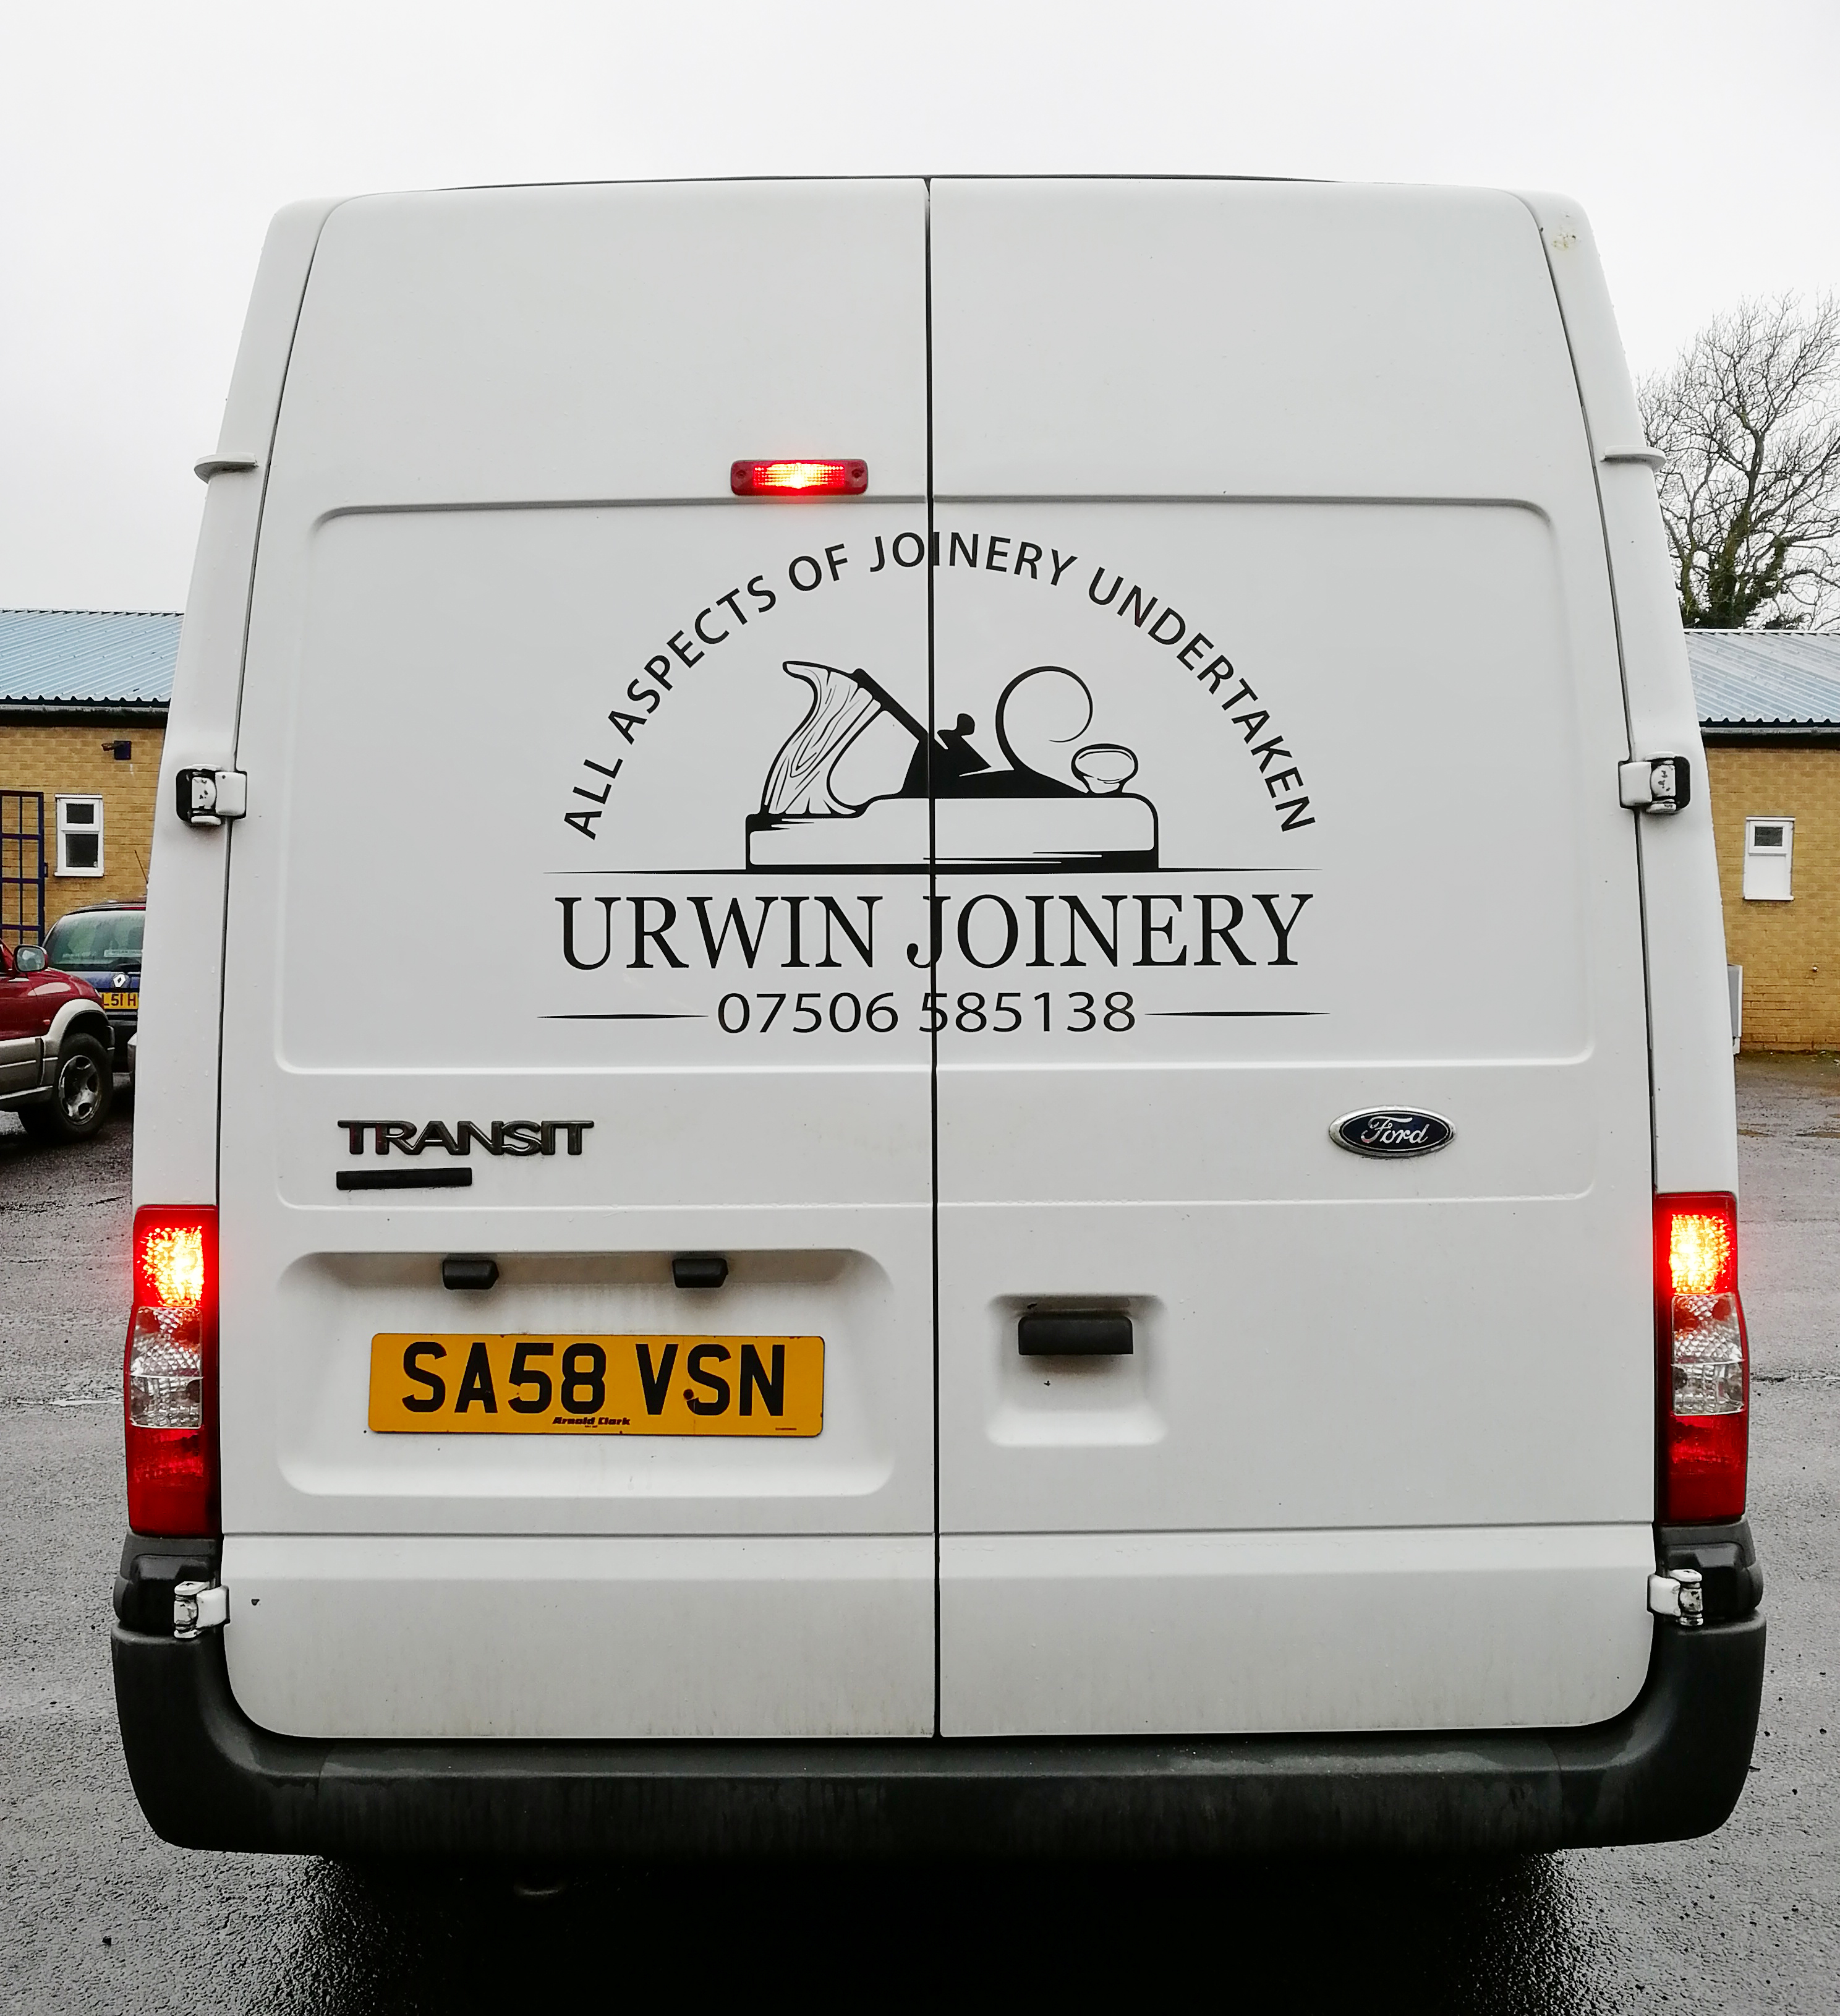 Urwin-Joinery-Van1